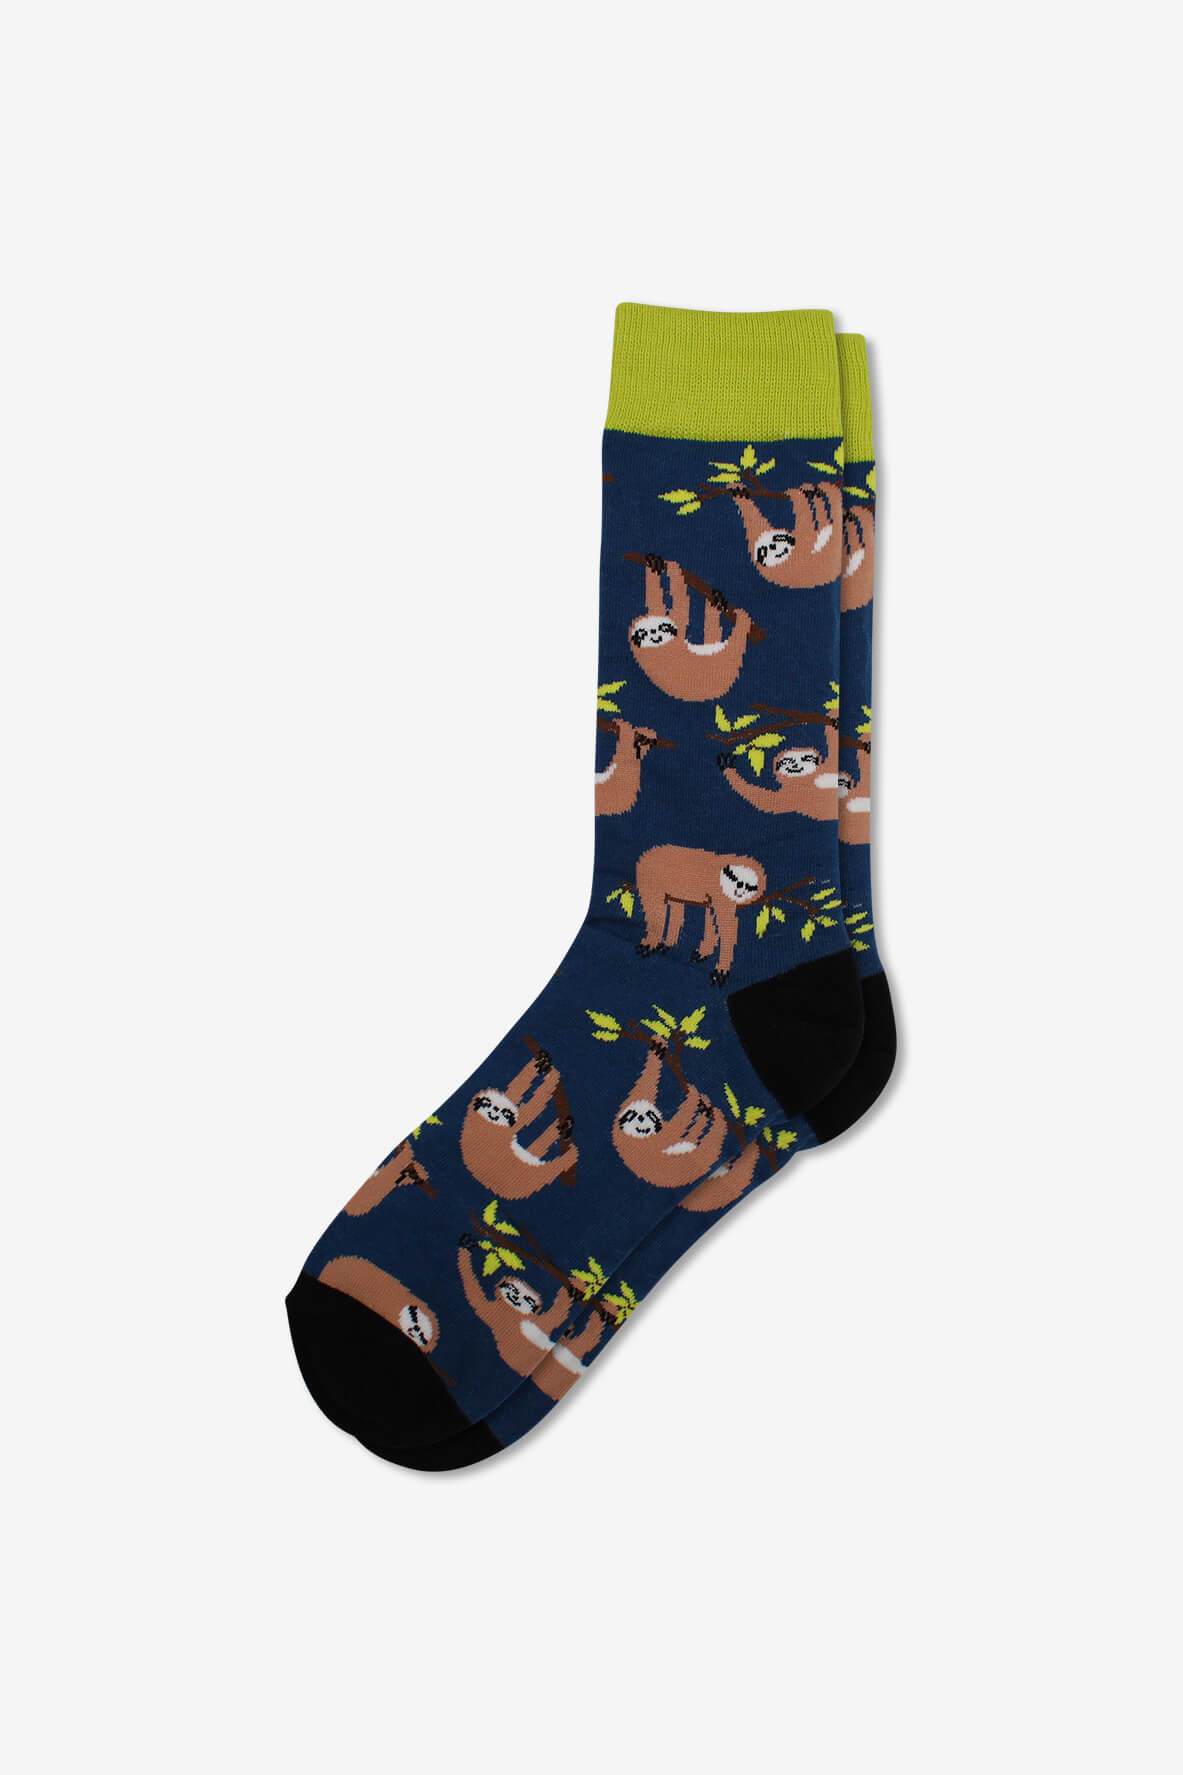 Socks IMG_5263, socks, GoTie